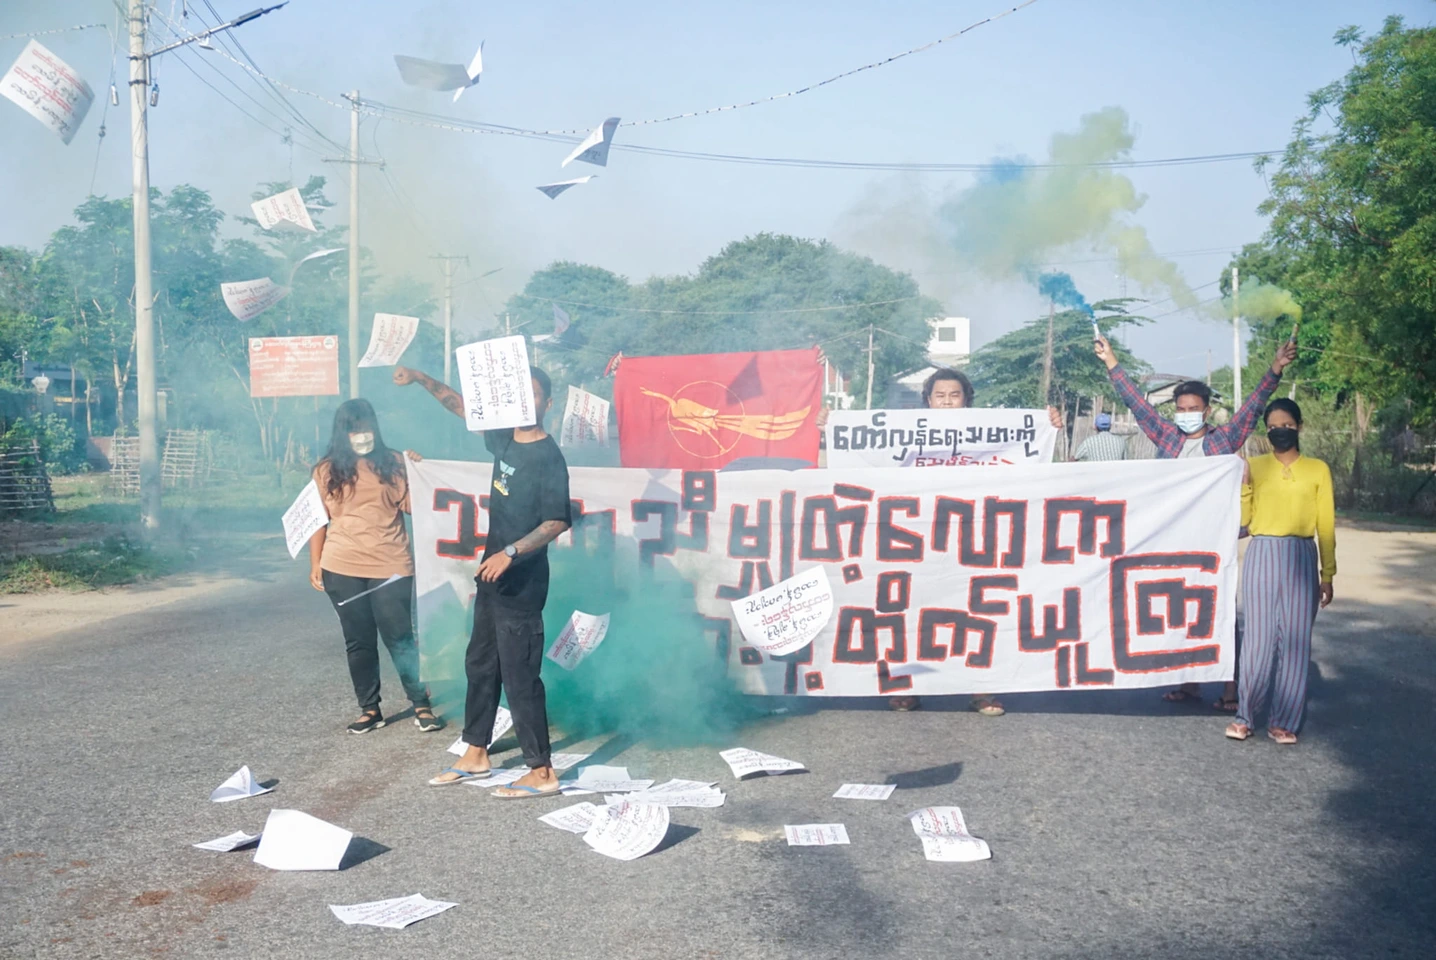 “သာတူညီမျှတဲ့လောက လူထုအားနဲ့တိုက်ယူကြ” အရာတော်သပိတ် မုံရွာမြို့အဝင်တွင် ဆန္ဒပြ